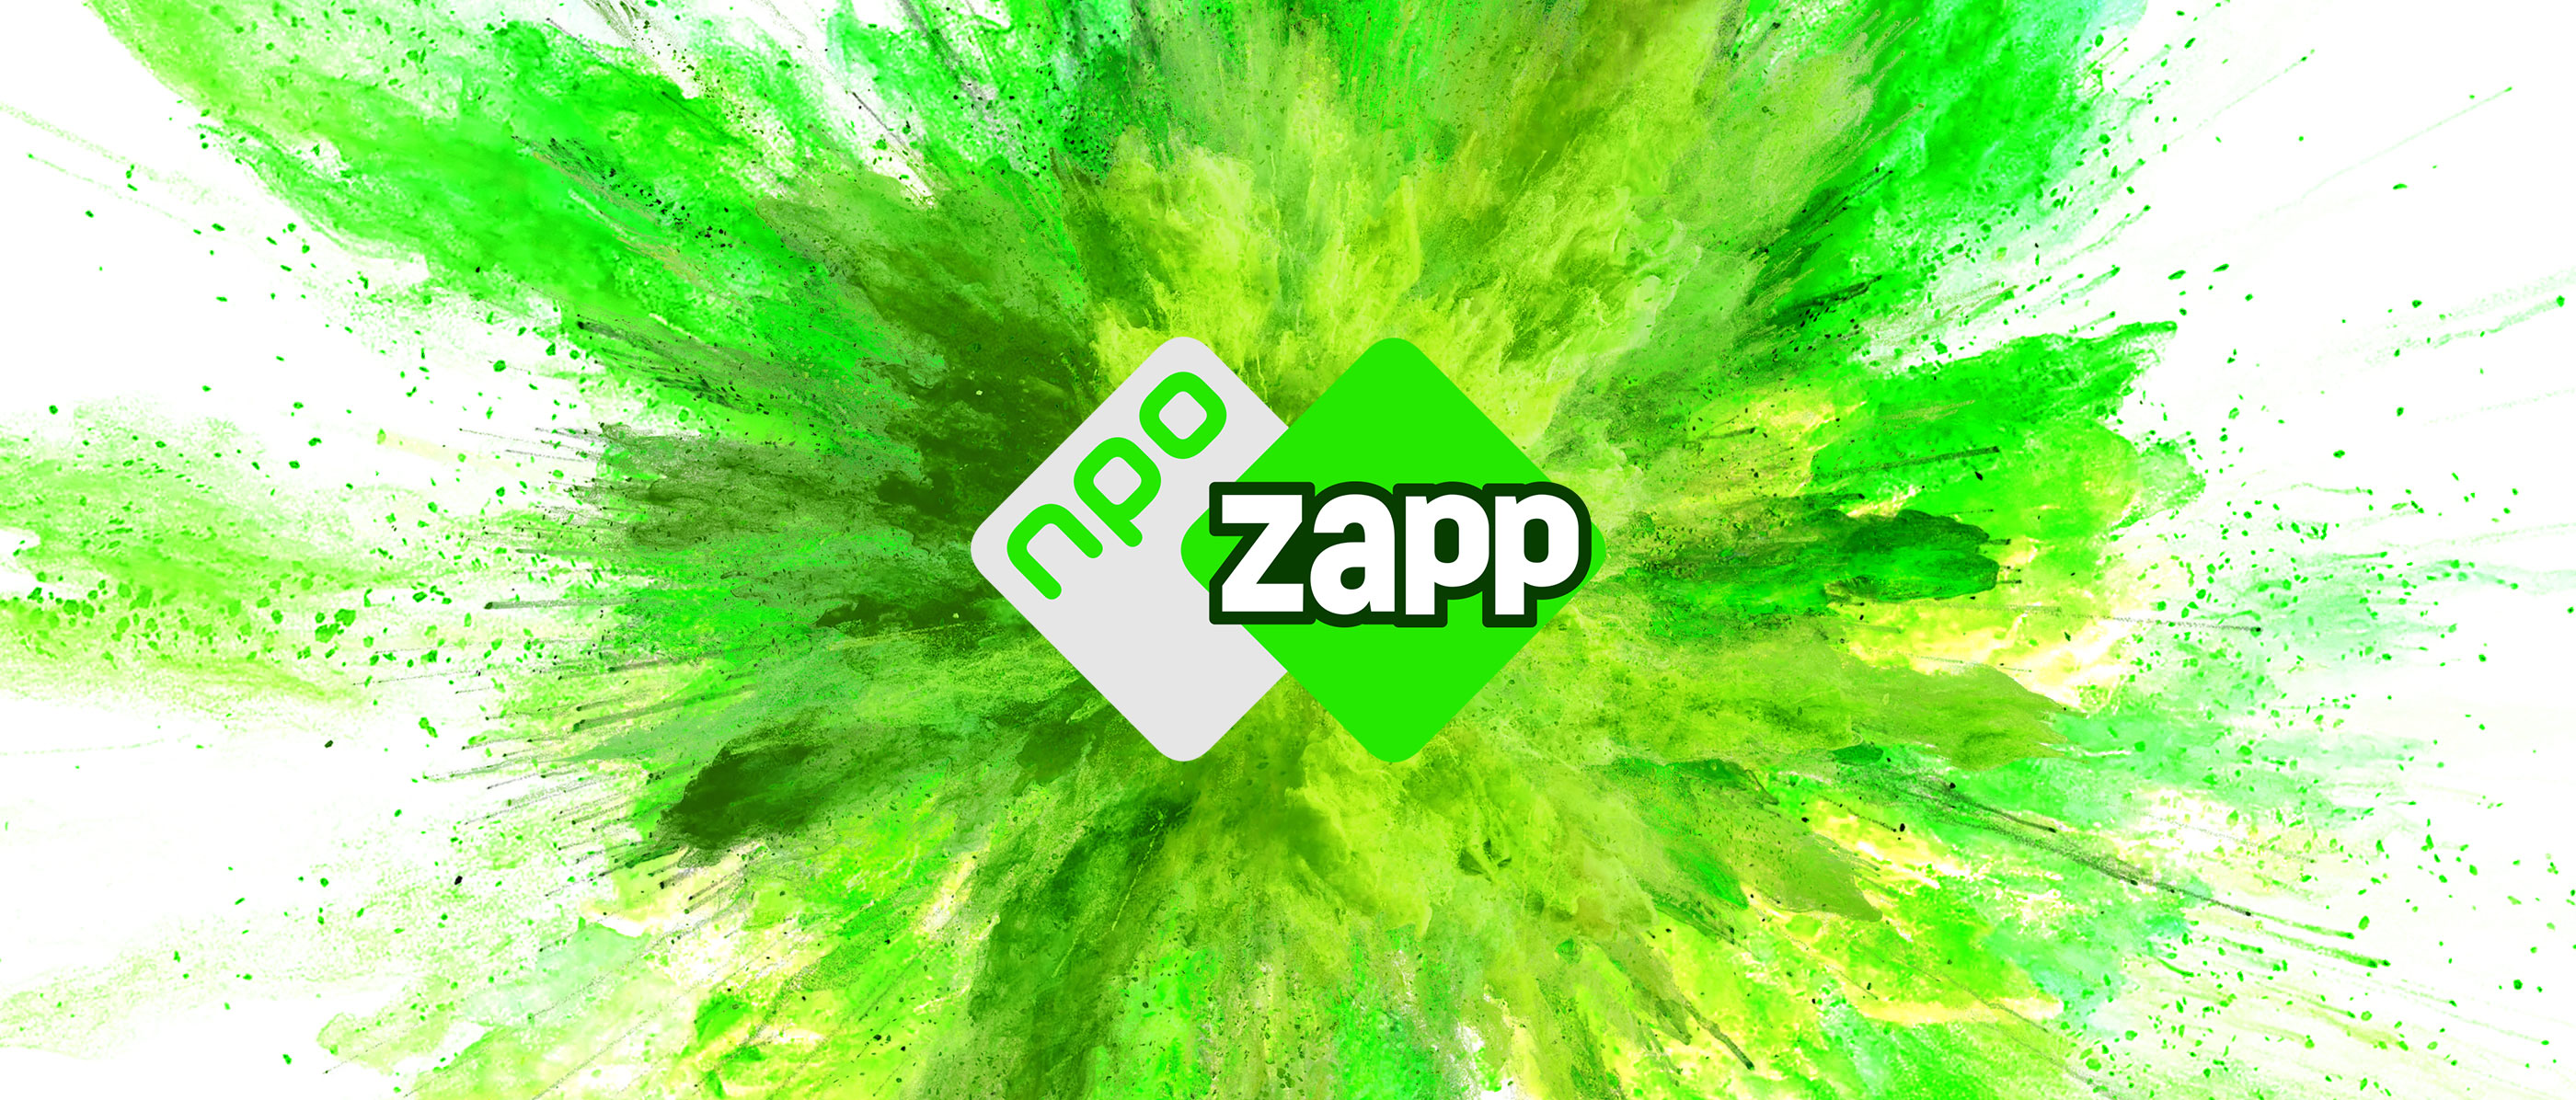 NPO komt in 2021 nieuwe Zapp-app - Spreekbuis.nl